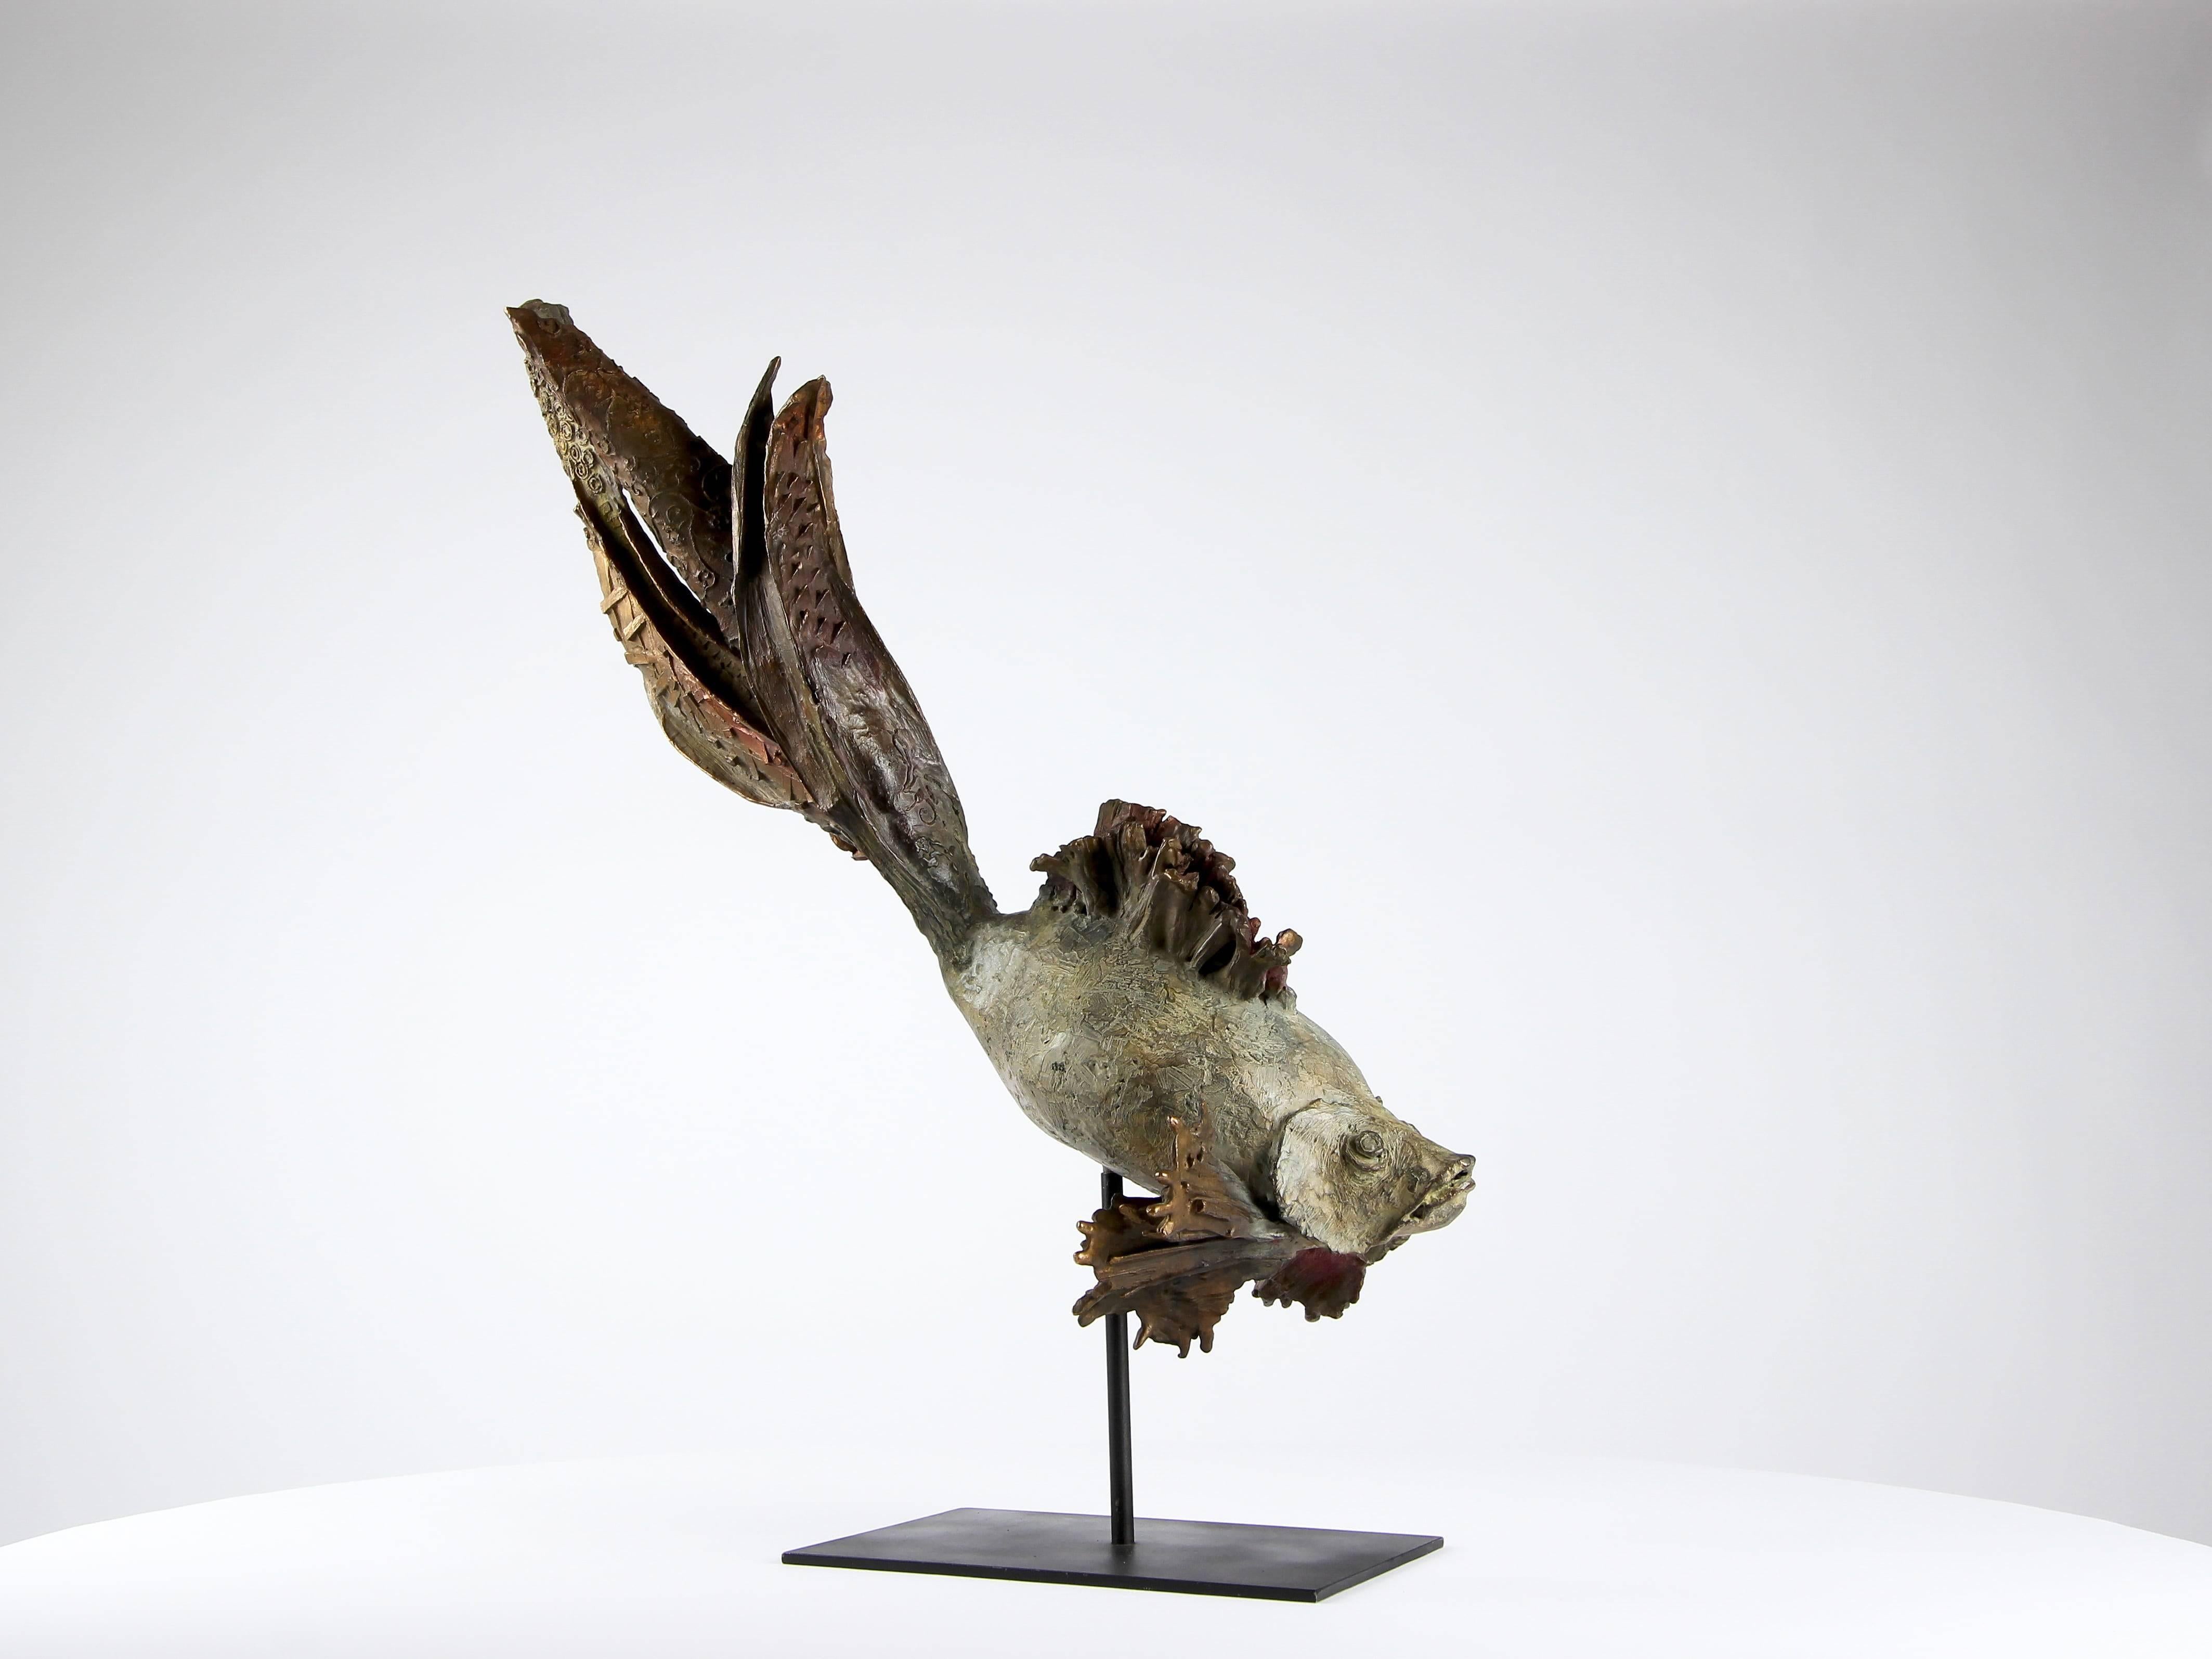 Le poisson siamois "Princesse" est une sculpture unique de l'artiste contemporaine Chésade, représentative de l'intérêt du sculpteur pour le monde marin. Bronze, 44 cm × 60 cm × 25 cm.

Chésade considère la mer comme "un conservatoire de l'exotisme